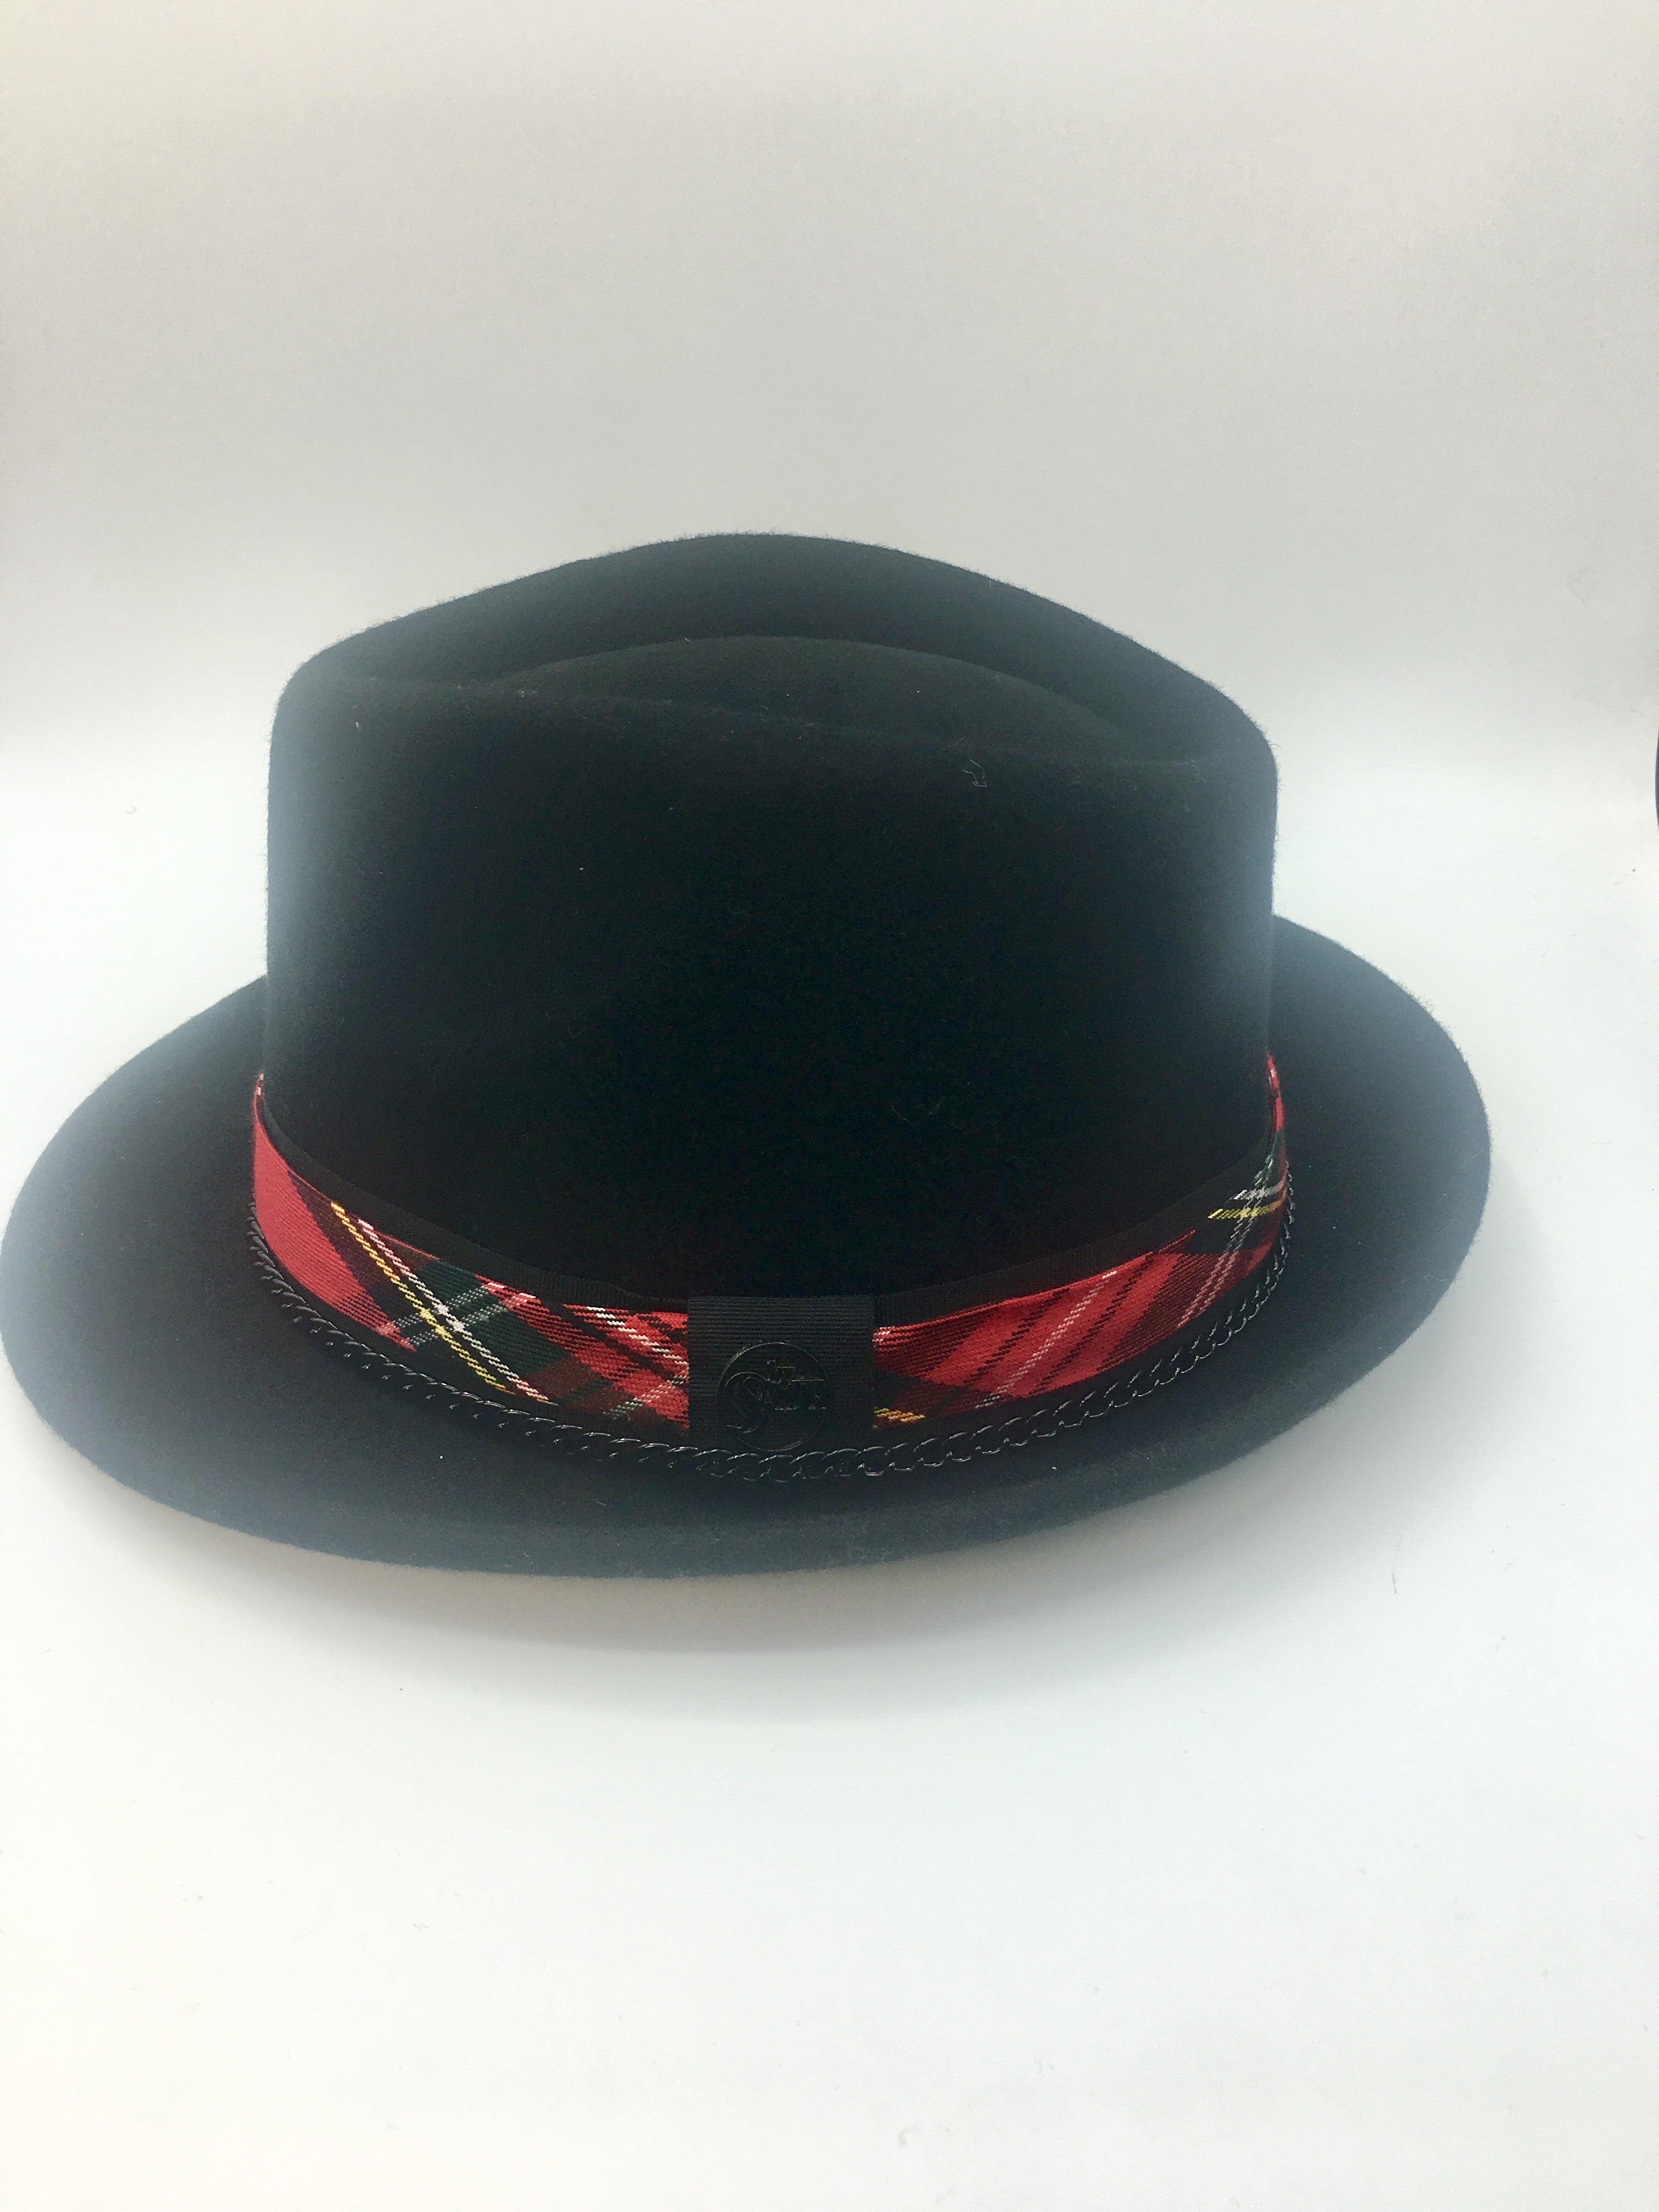 borsalino chapeau tartan ecossais chaine rock chapeau laine feutre accessoire tsniout fashion chapeau Loan